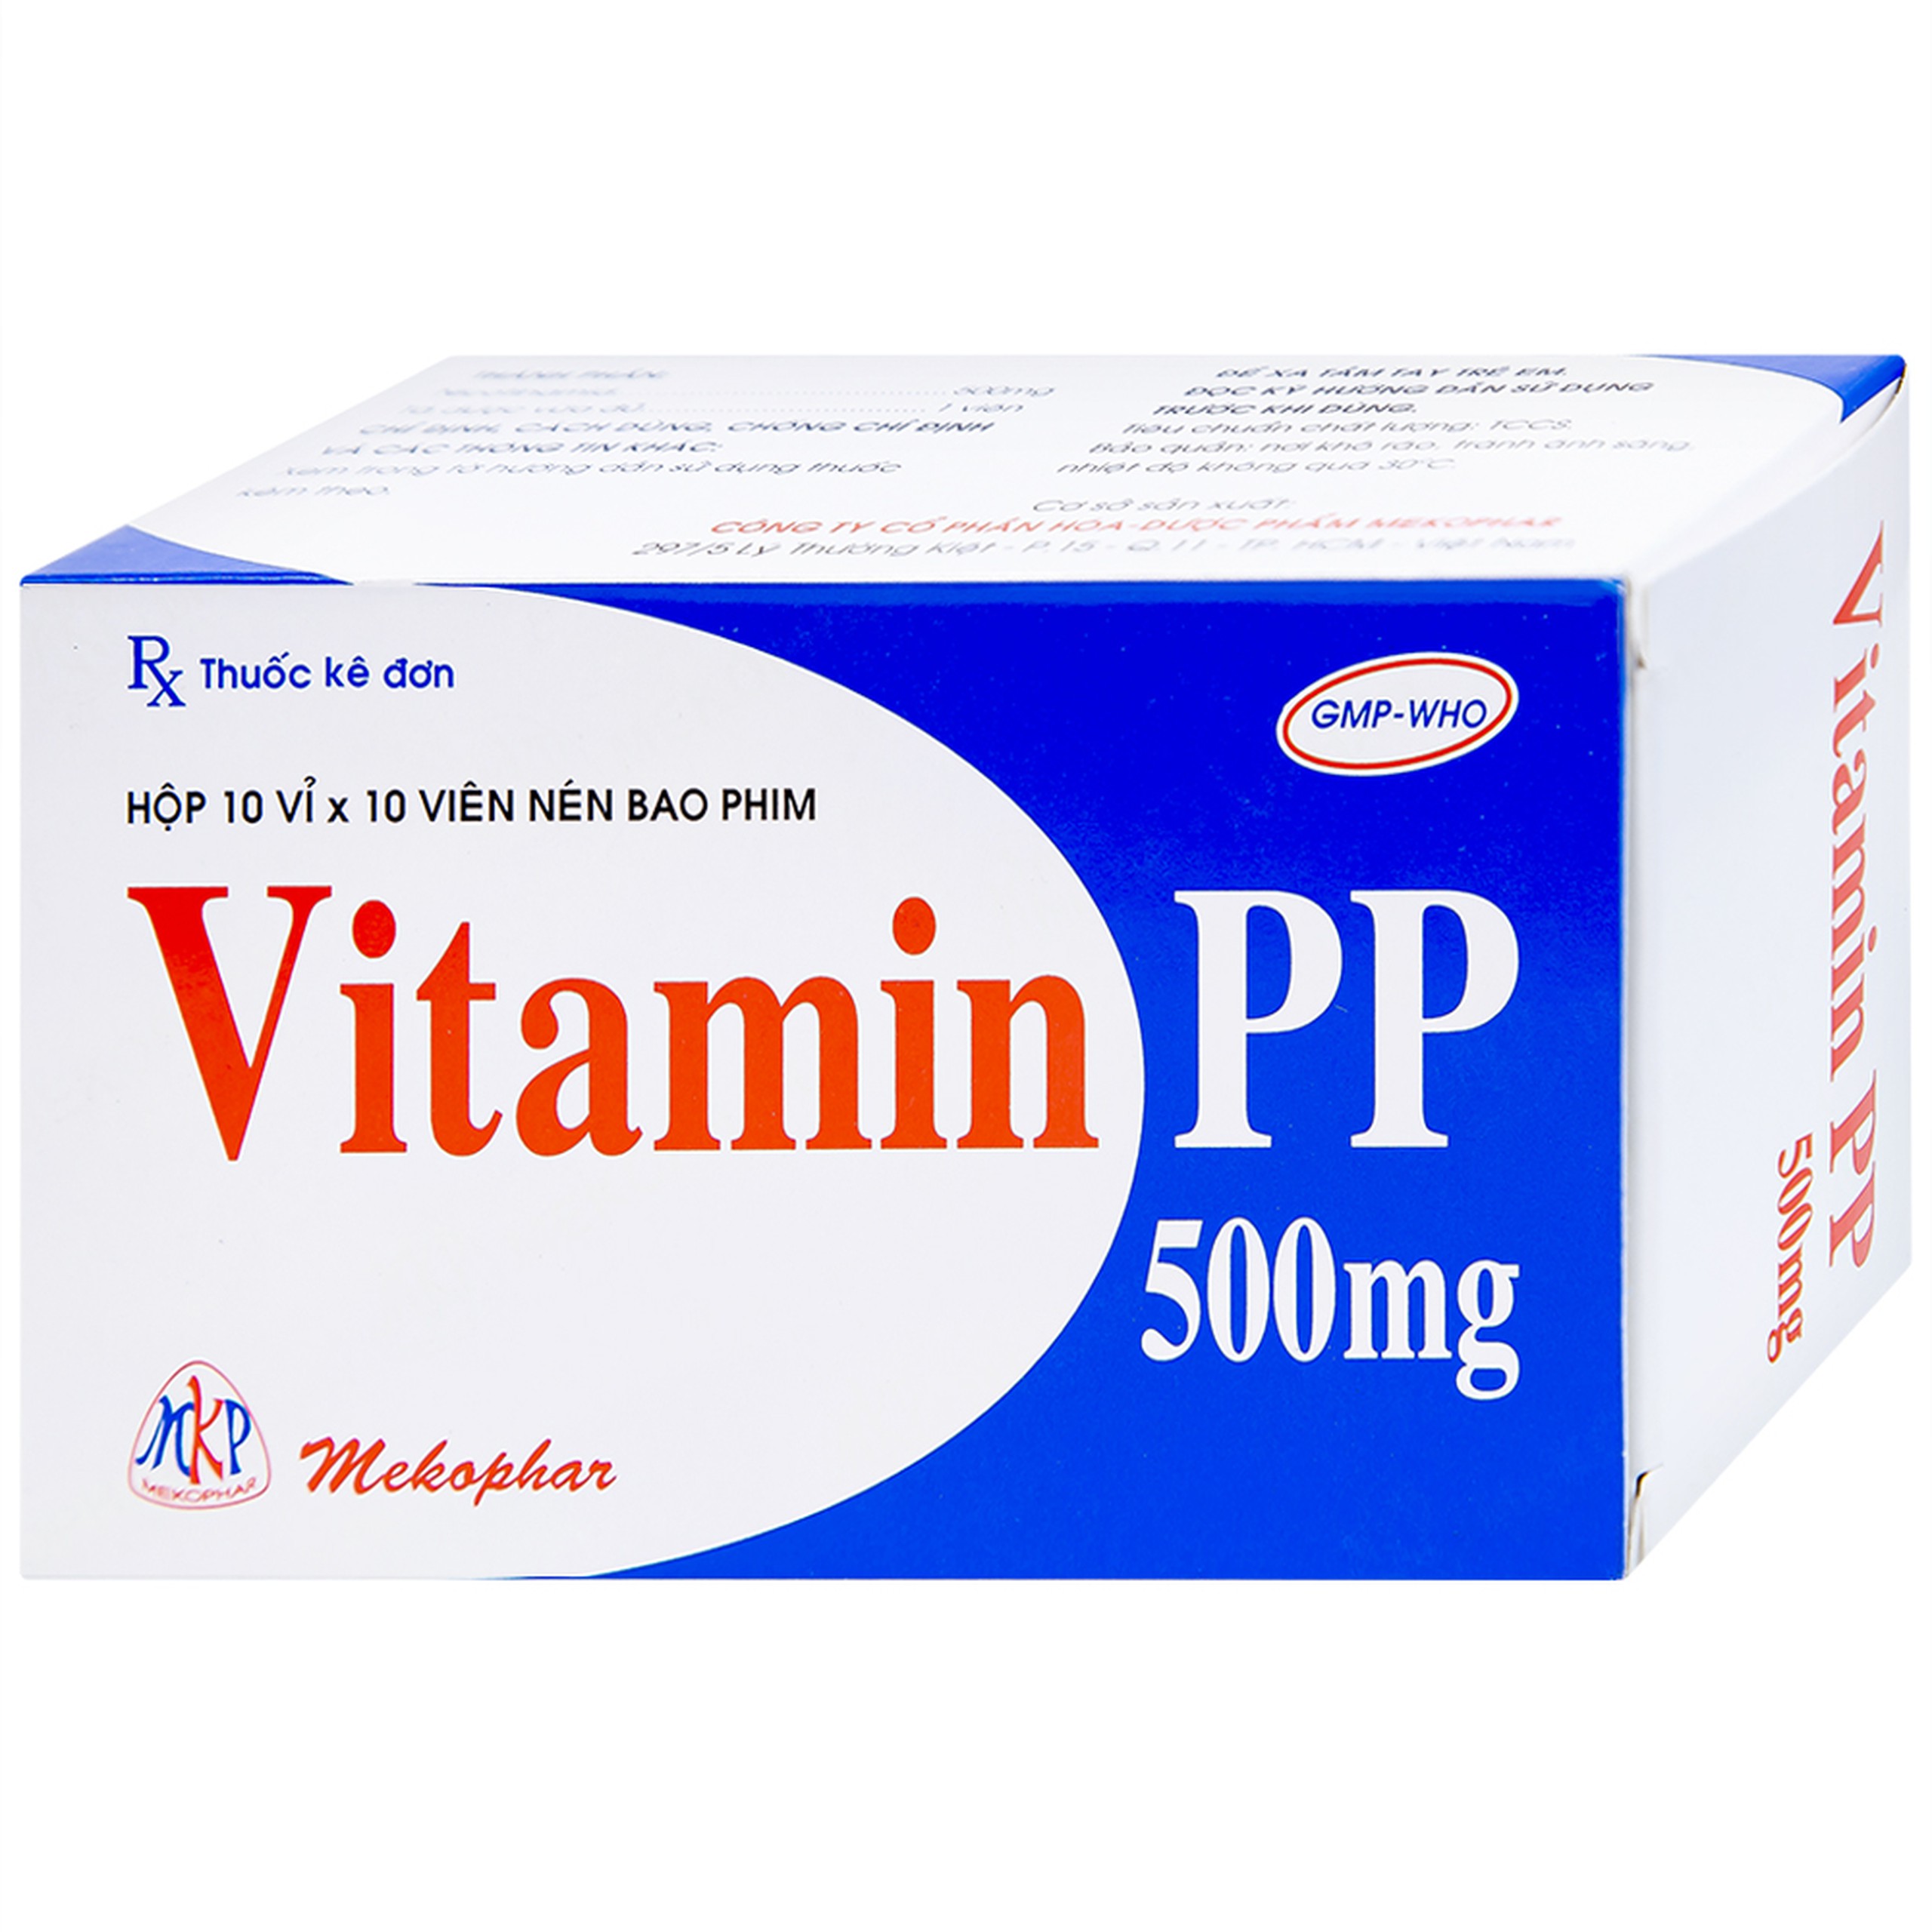 Thuốc Vitamin PP 500mg Mekophar điều trị bệnh pellagra (10 vỉ x 10 viên)